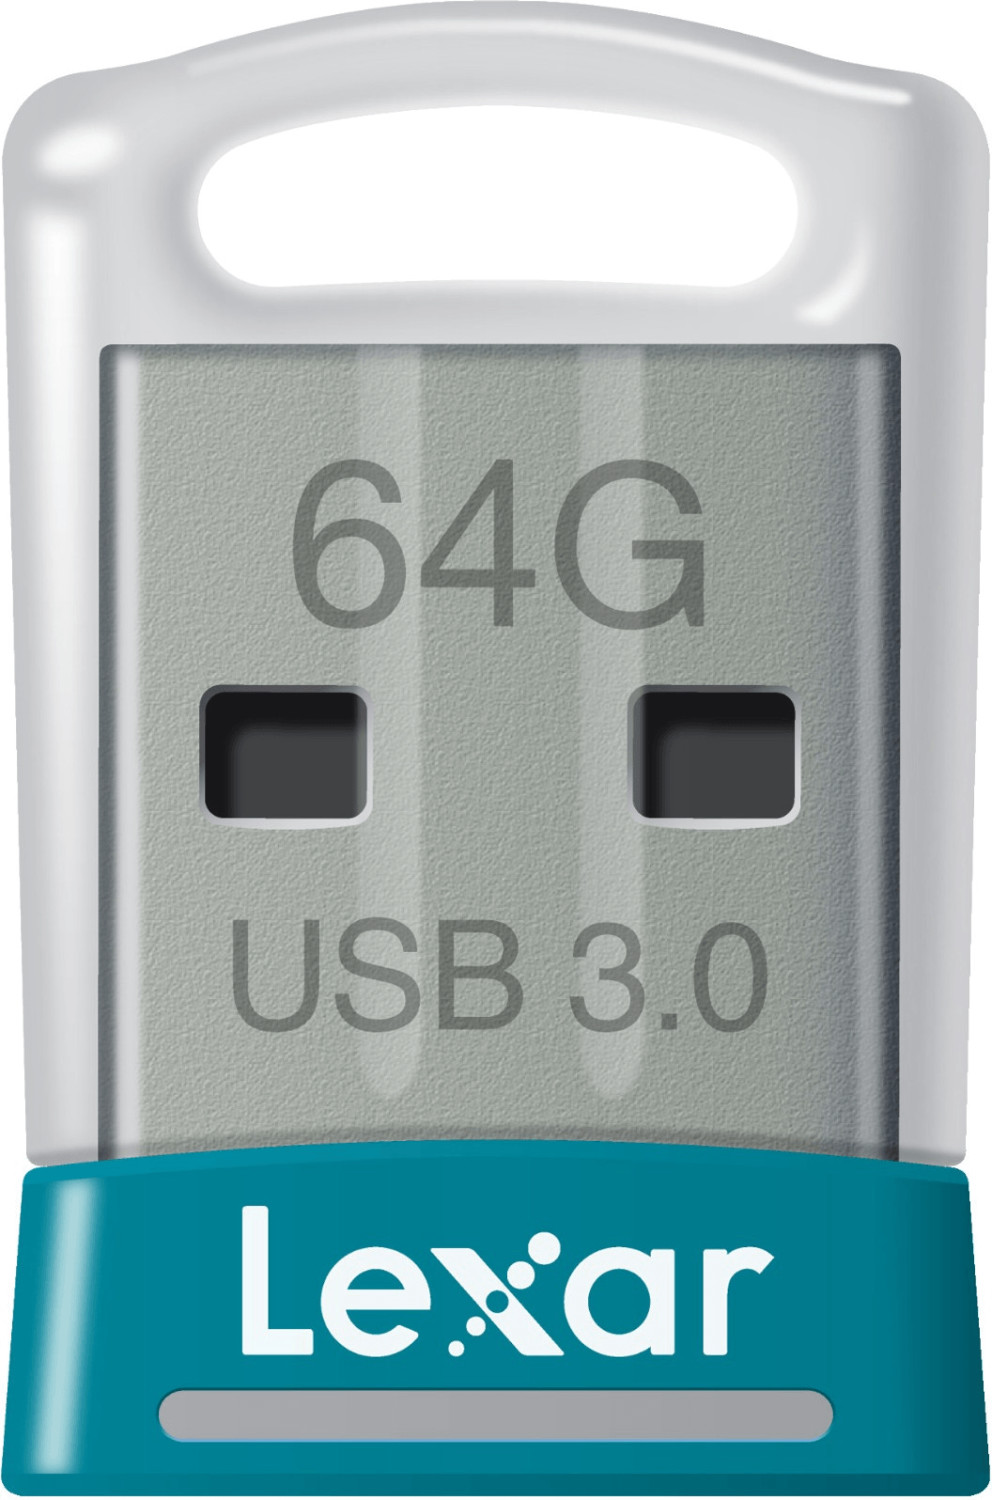 Lexar JumpDrive S45 64GB